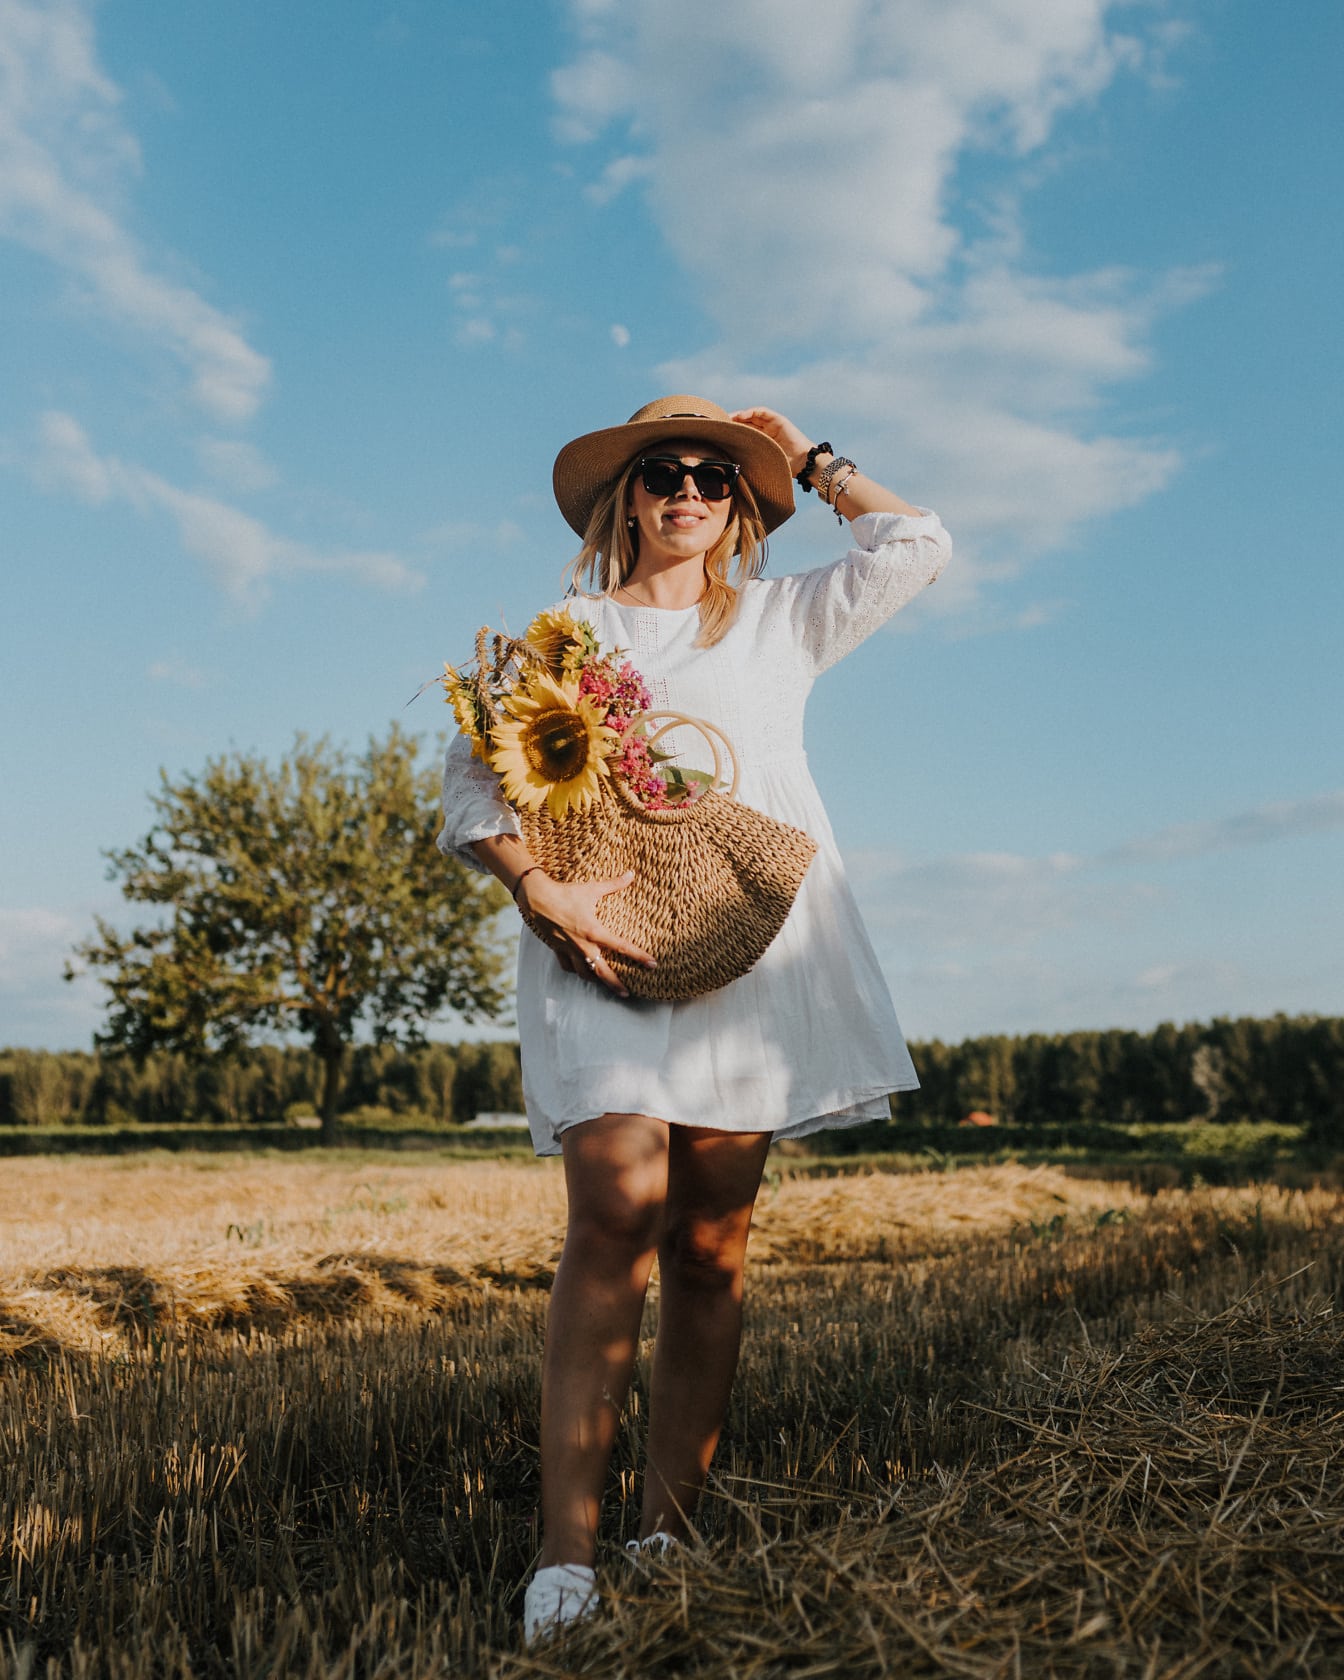 Великолепная фотомодель с плетеной корзиной и соломенной шляпой на пшеничном поле